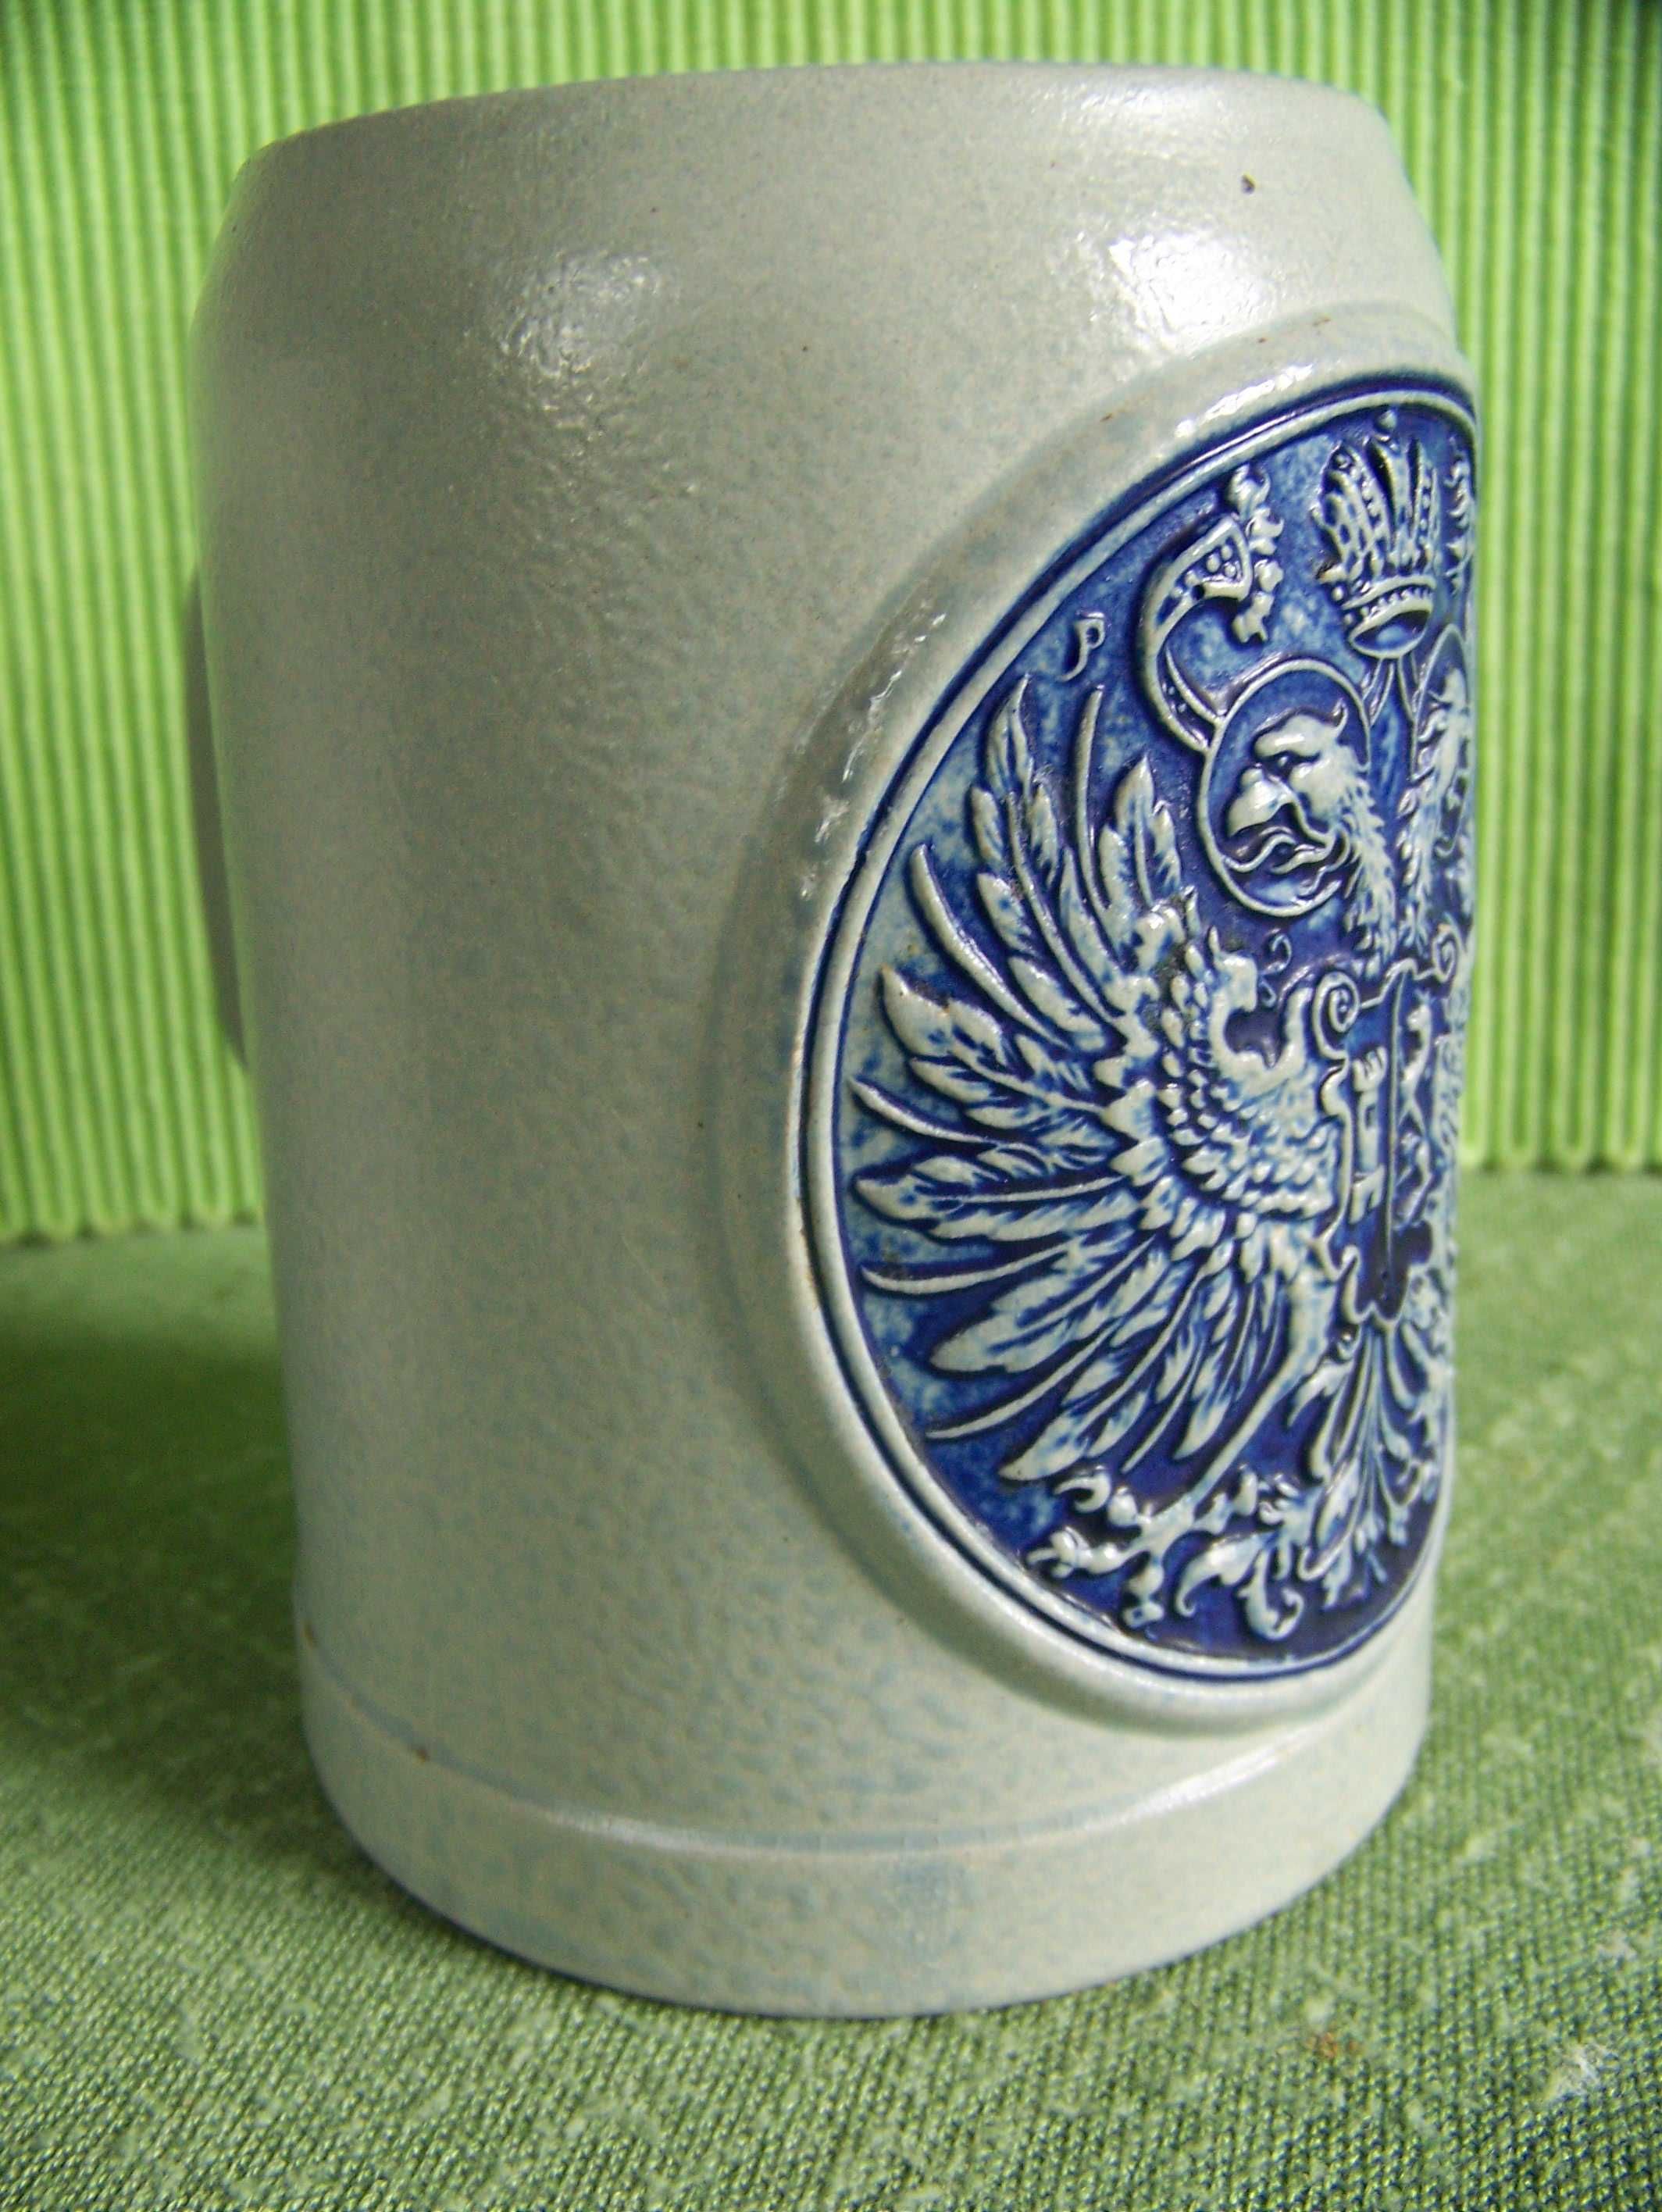 kufel porcelanowy z herbem cesarskim orła dwugłowego